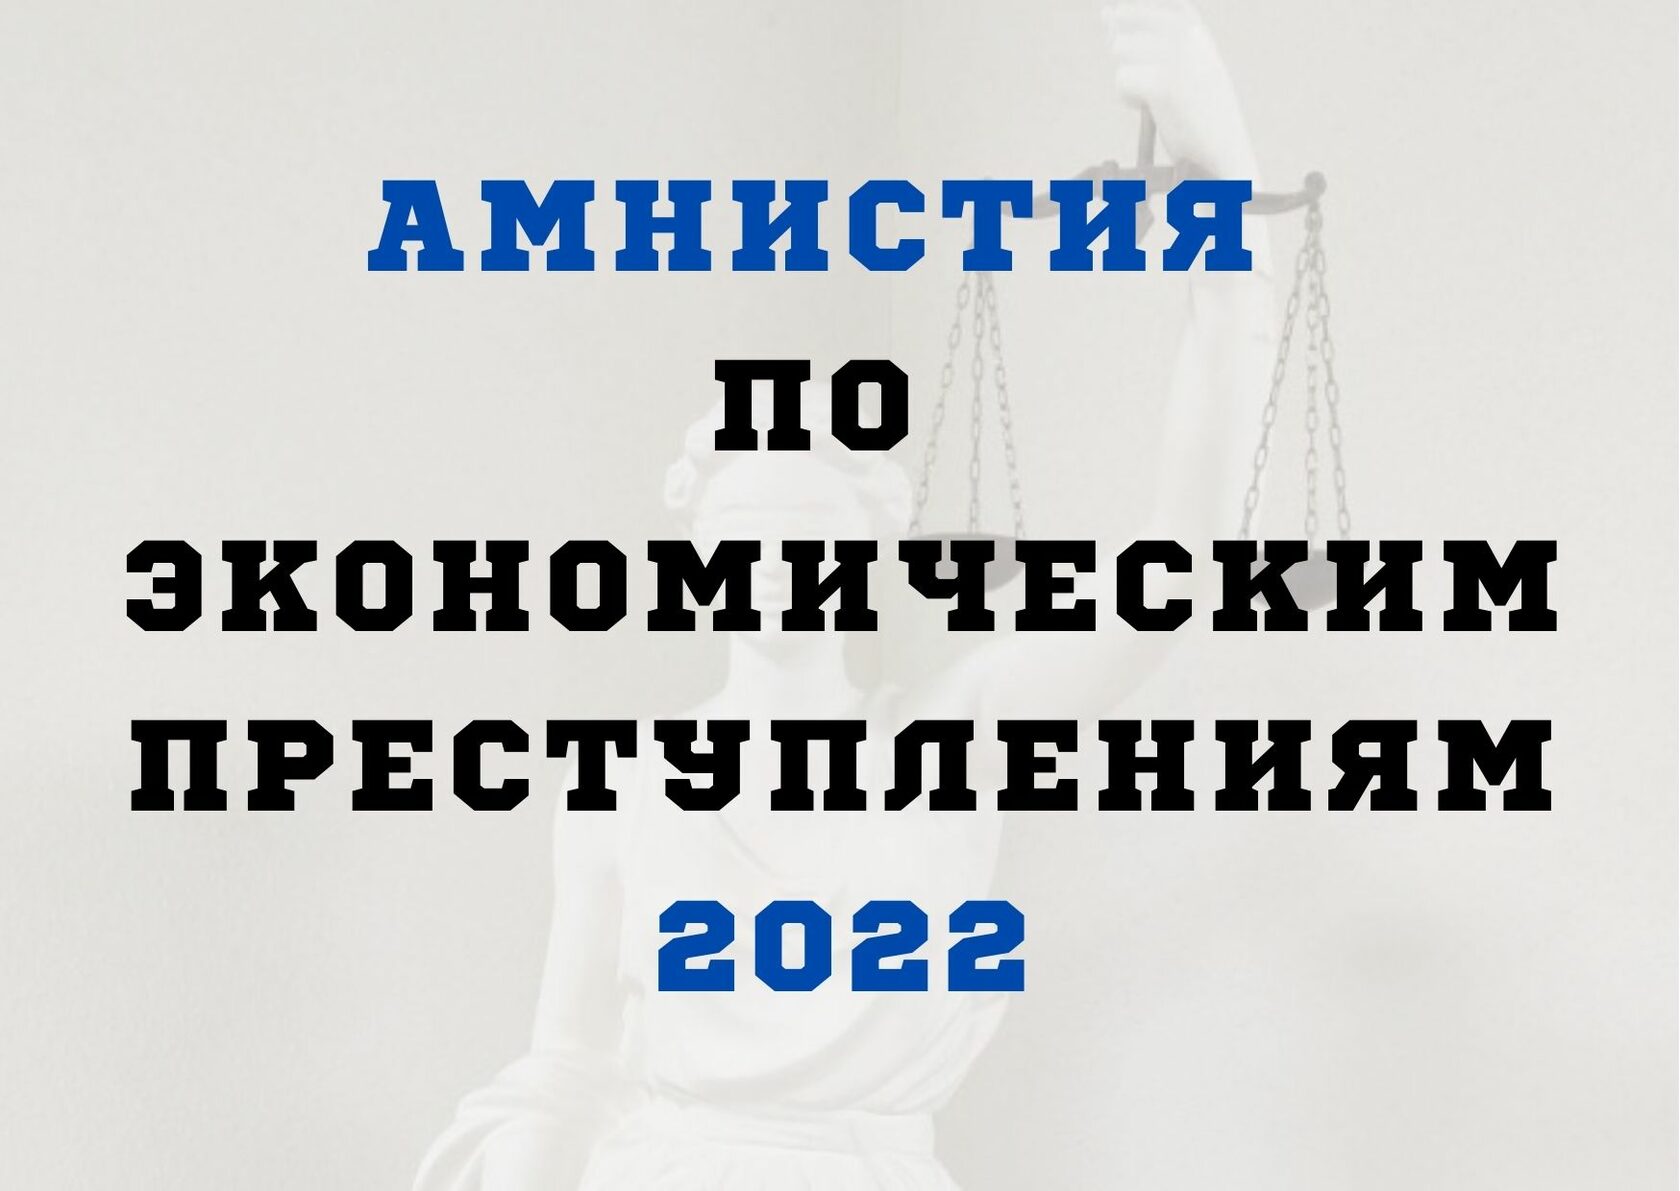 Амнистия в честь. Амнистия по экономическим преступлениям. Амнистия 2022. Амнистия законопроект 2022. Экономическая амнистия 2022.